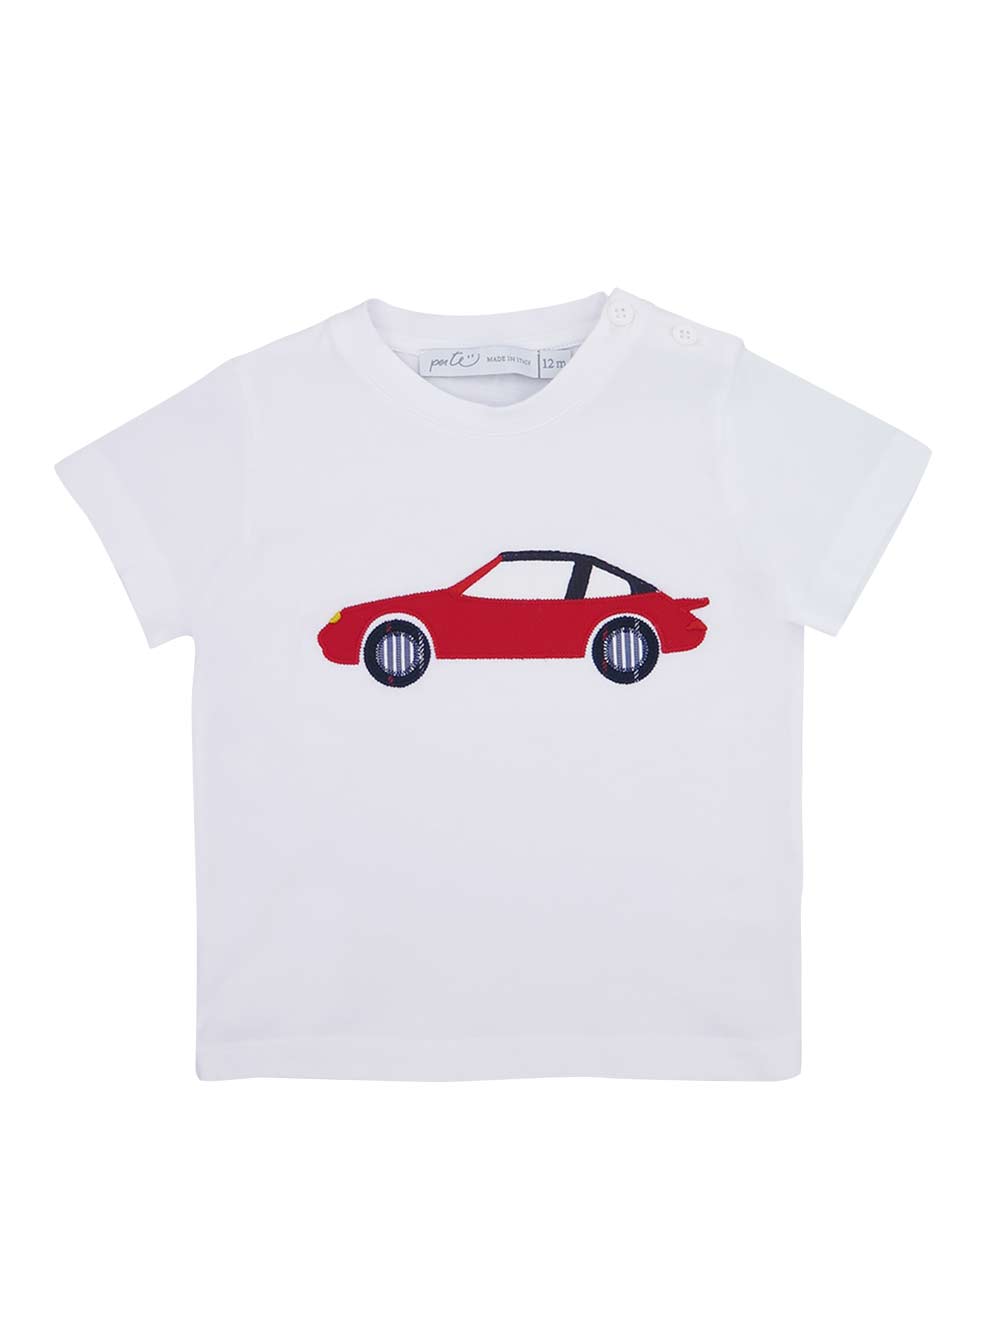 Car Print T-Shirt